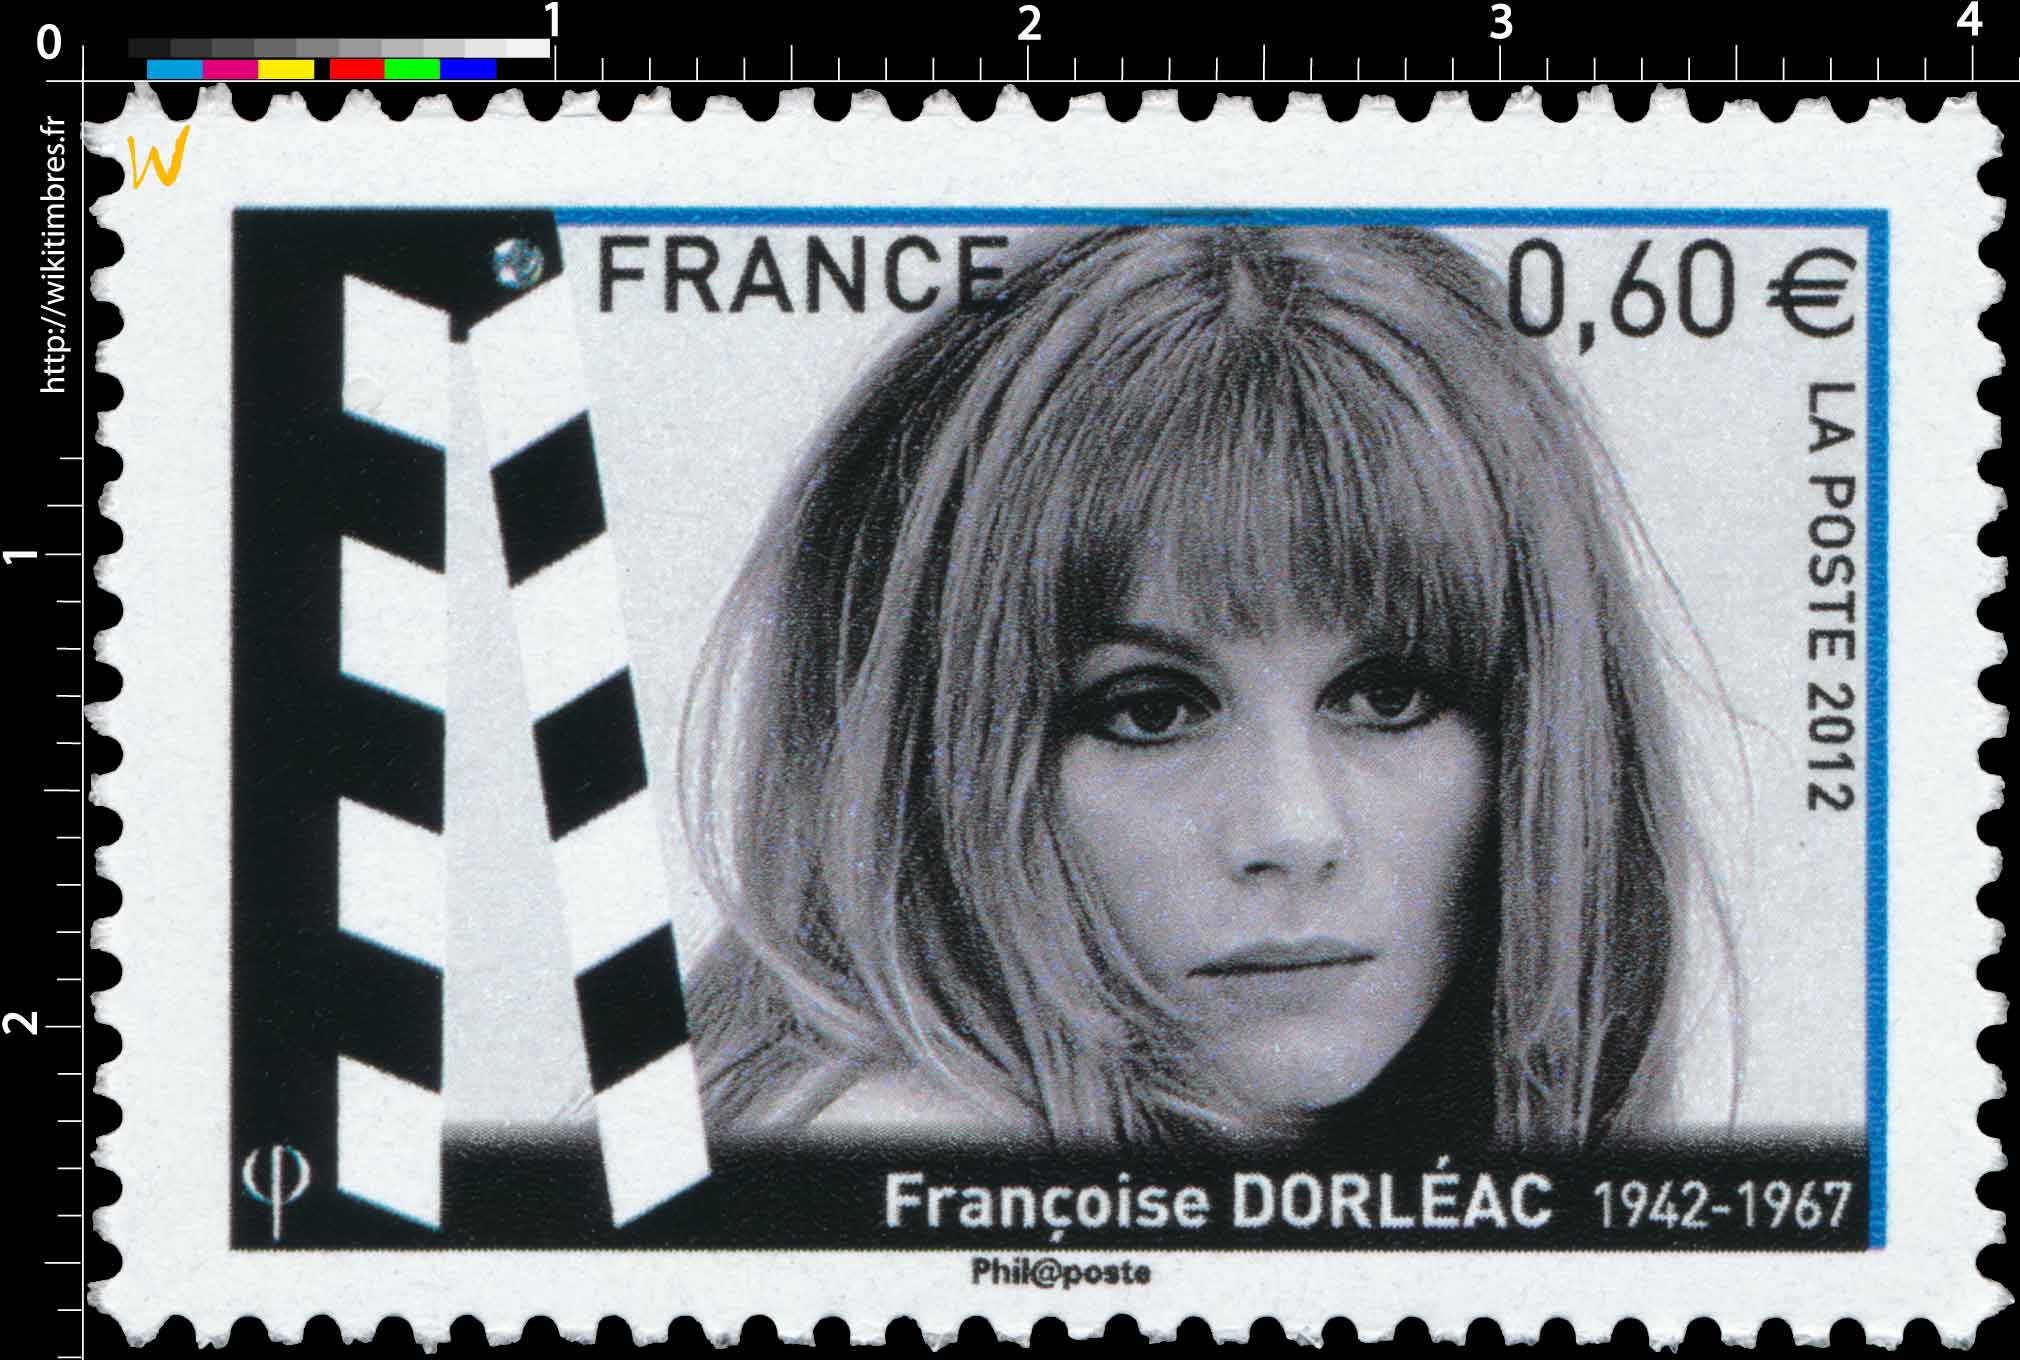 Françoise D'orléac (1942-1967)